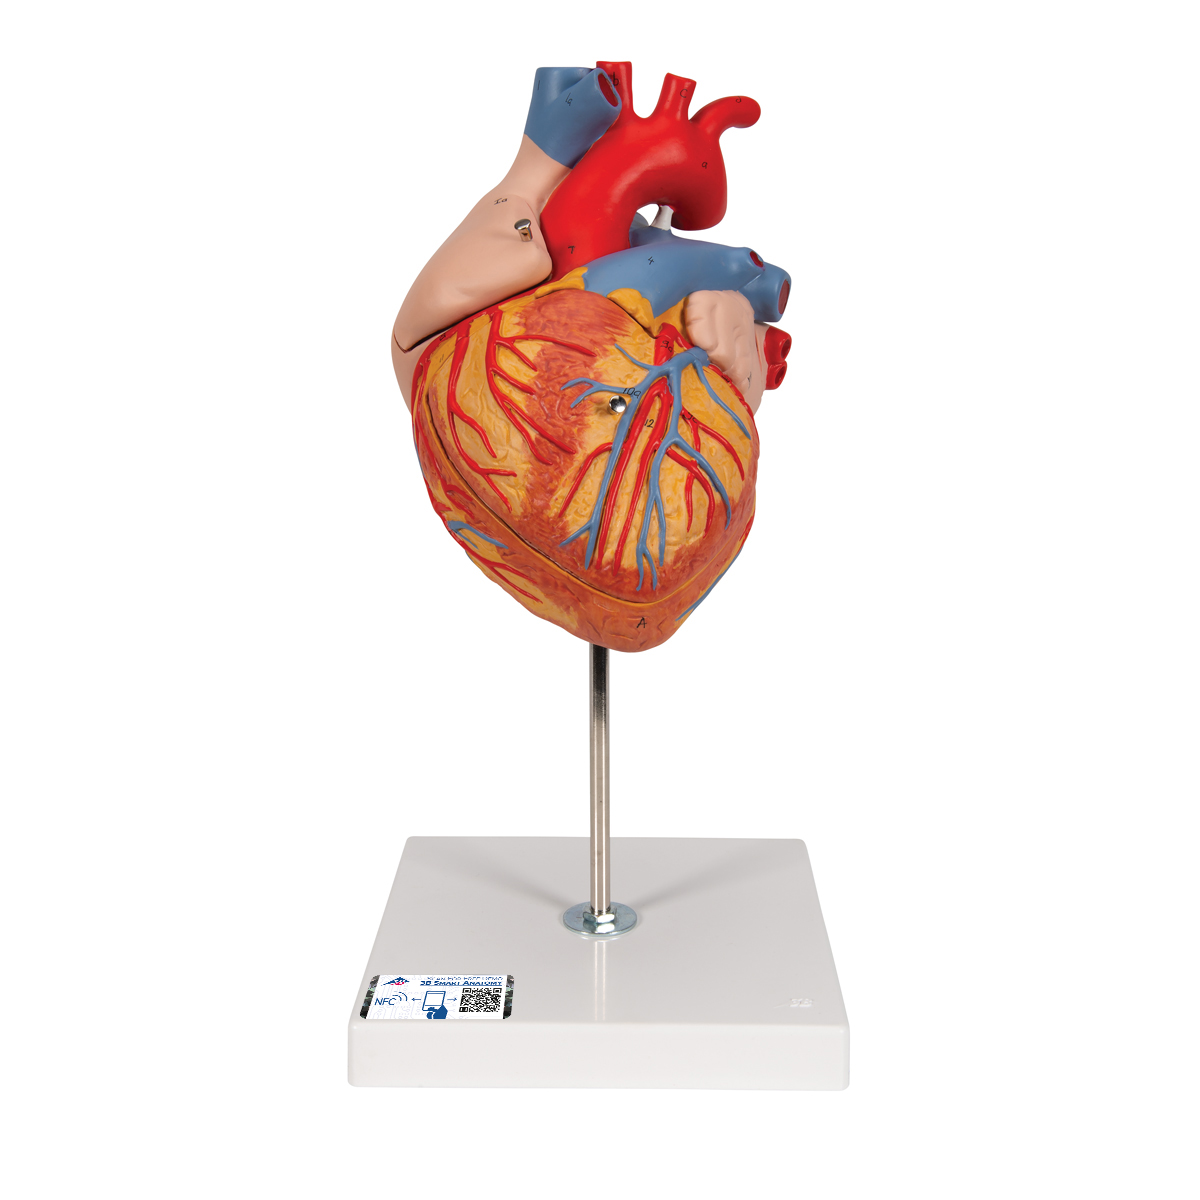 Herzmodell, 2-fache Größe, 4-teilig - 3B Smart Anatomy, Bestellnummer 1000268, G12, 3B Scientific